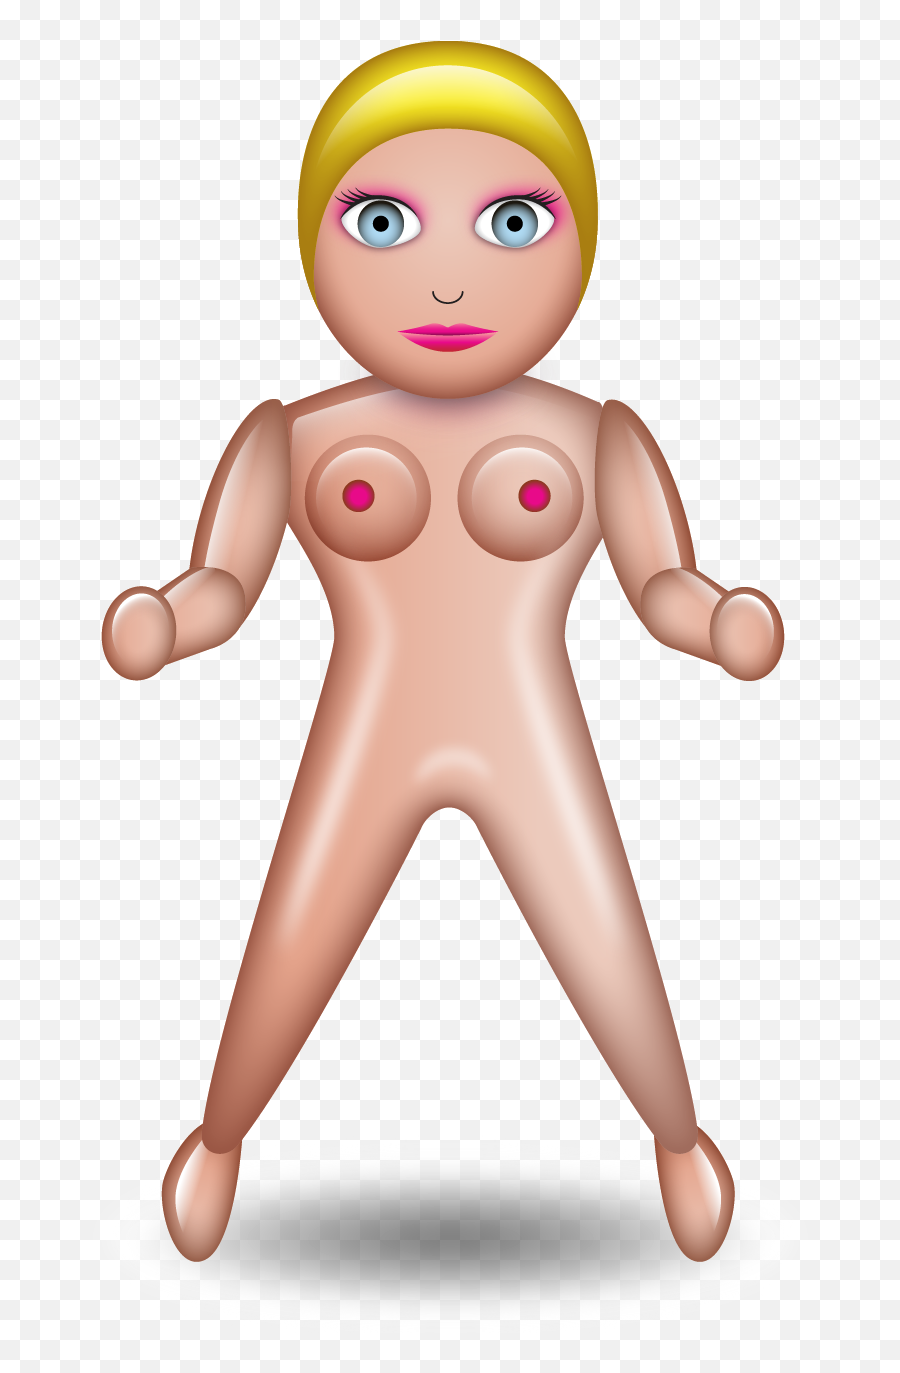 The Blow Up Doll Emoji - Emoticones De Despedida De Soltera,Doll Emoji